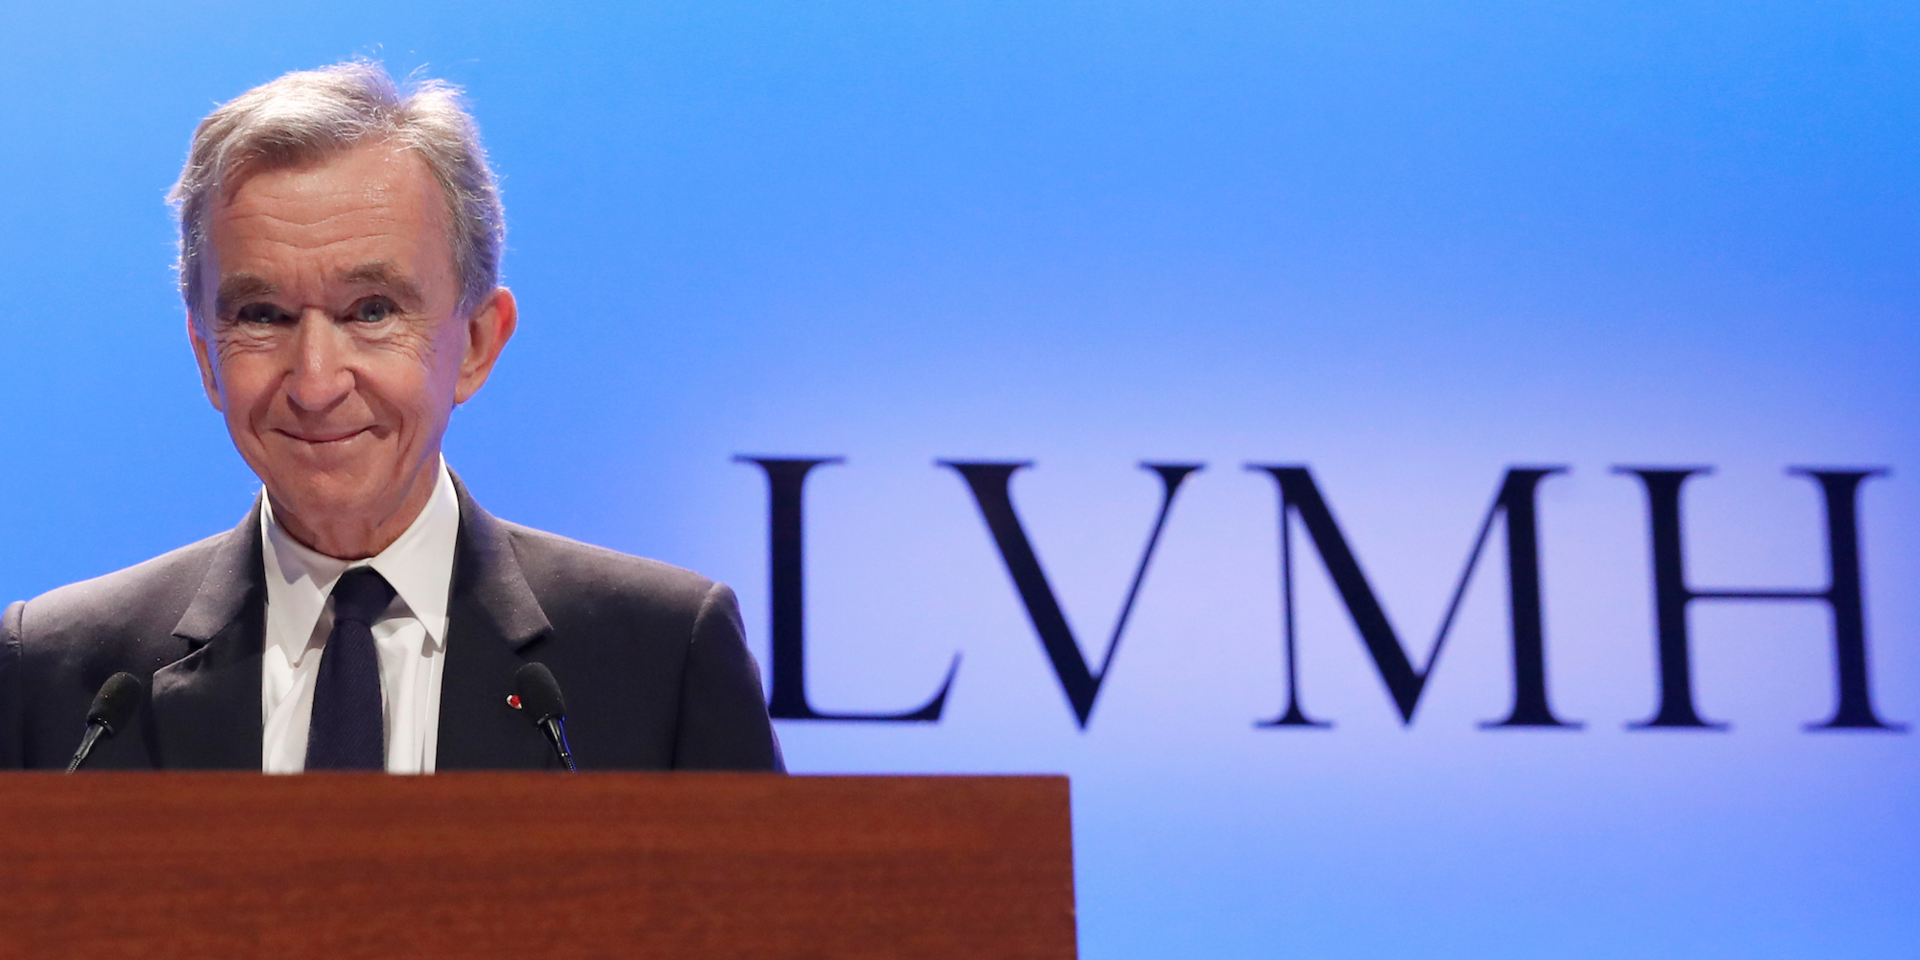 Tỉ phú Bernard Arnault (70 tuổi) là người đứng sau đế chế LVMH, tập đoàn hàng đầu thế giới về xa xỉ phẩm với 70 thương hiệu cao cấp cùng khoảng 4.000 nhà bán lẻ, hoạt động trong 6 lĩnh vực nổi bật. Ảnh: AP